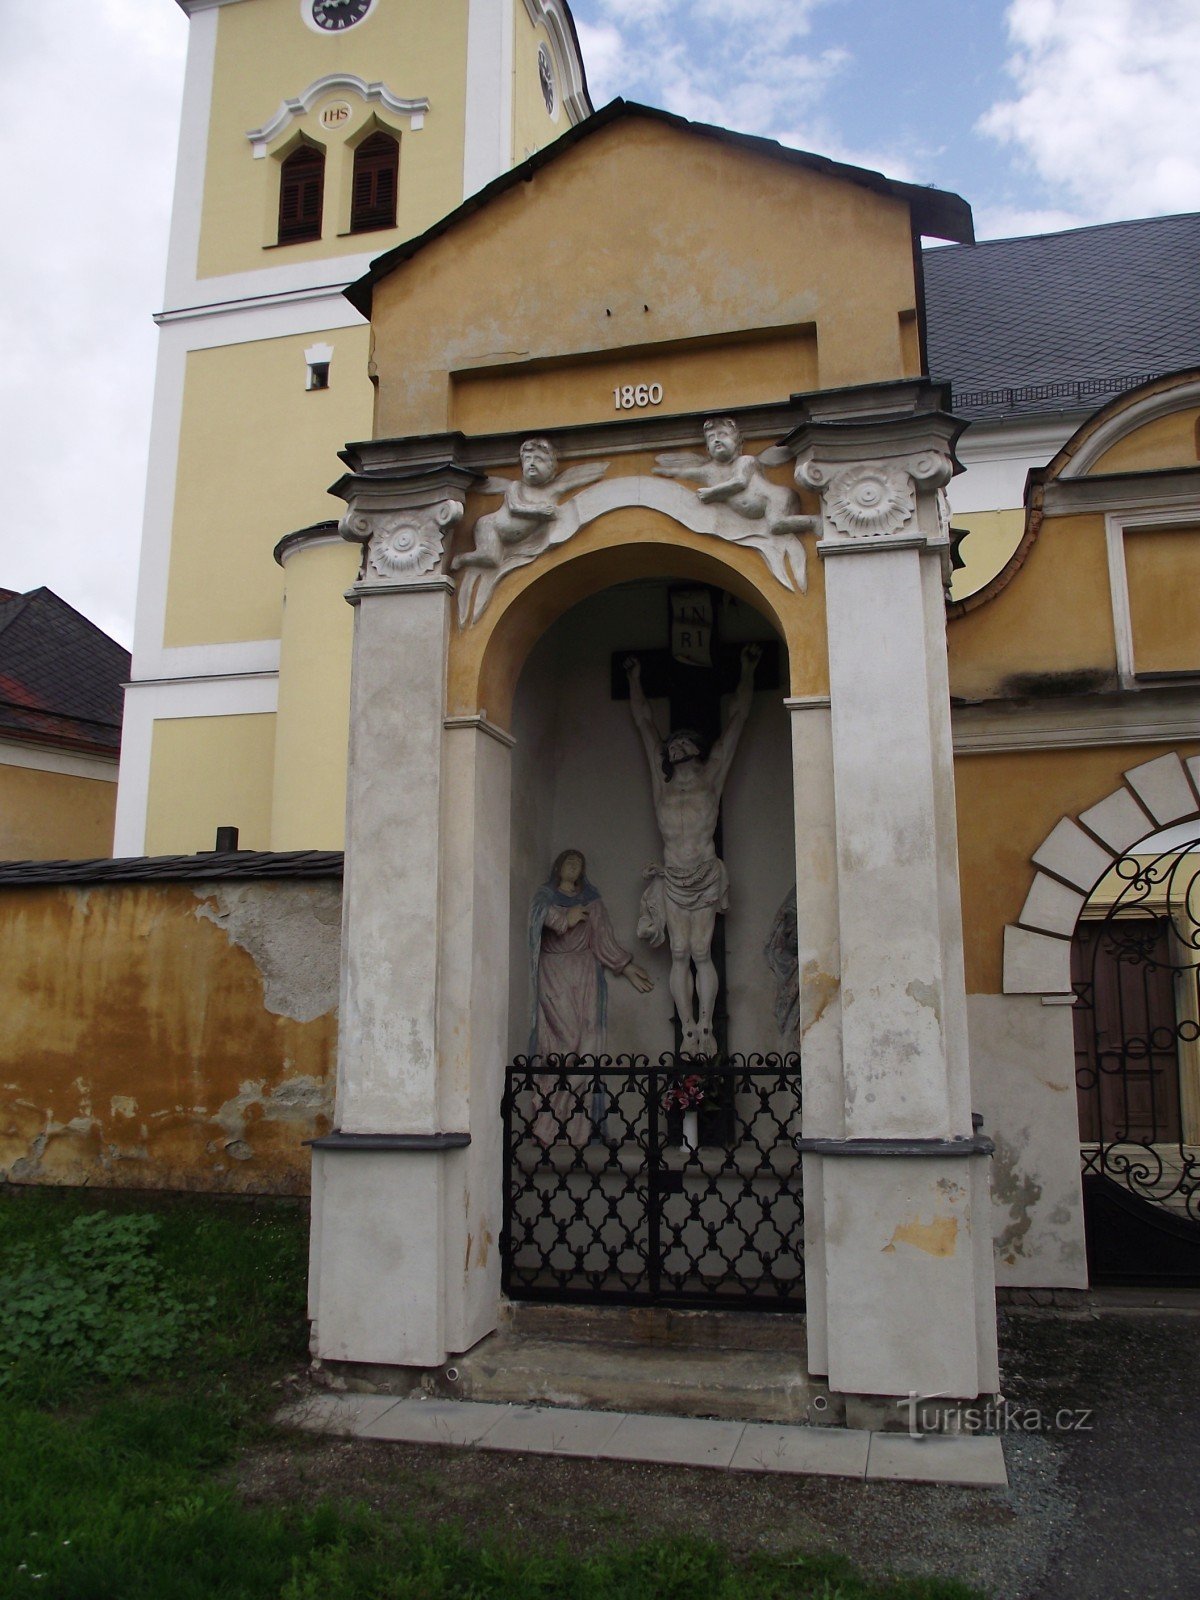 Moravičany – een dorp vol (niet alleen kleine) monumenten